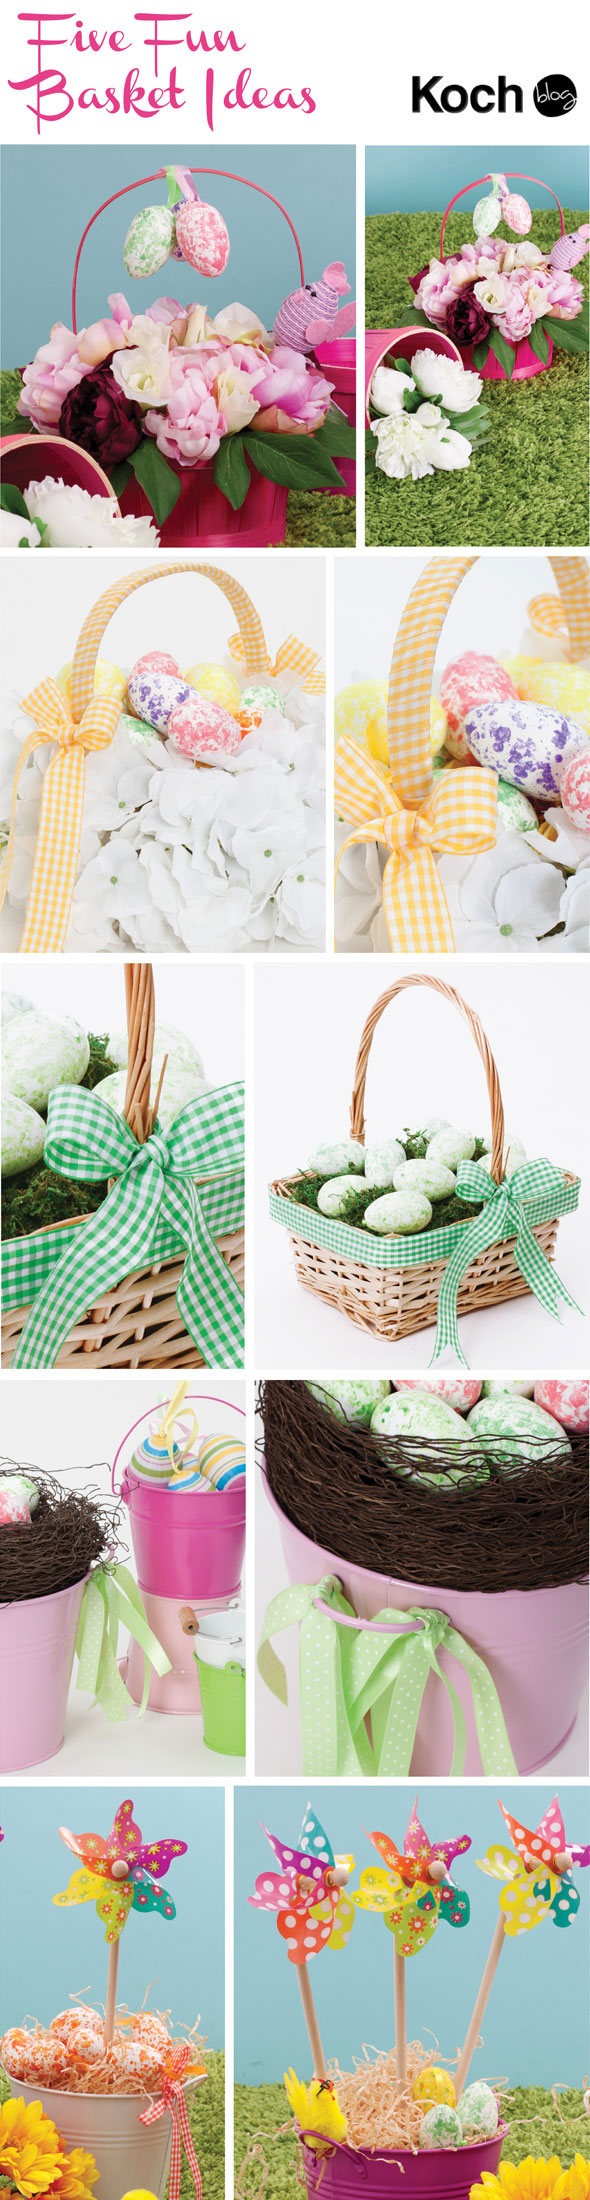 DIY Easter Basket and Hamper Inspirations